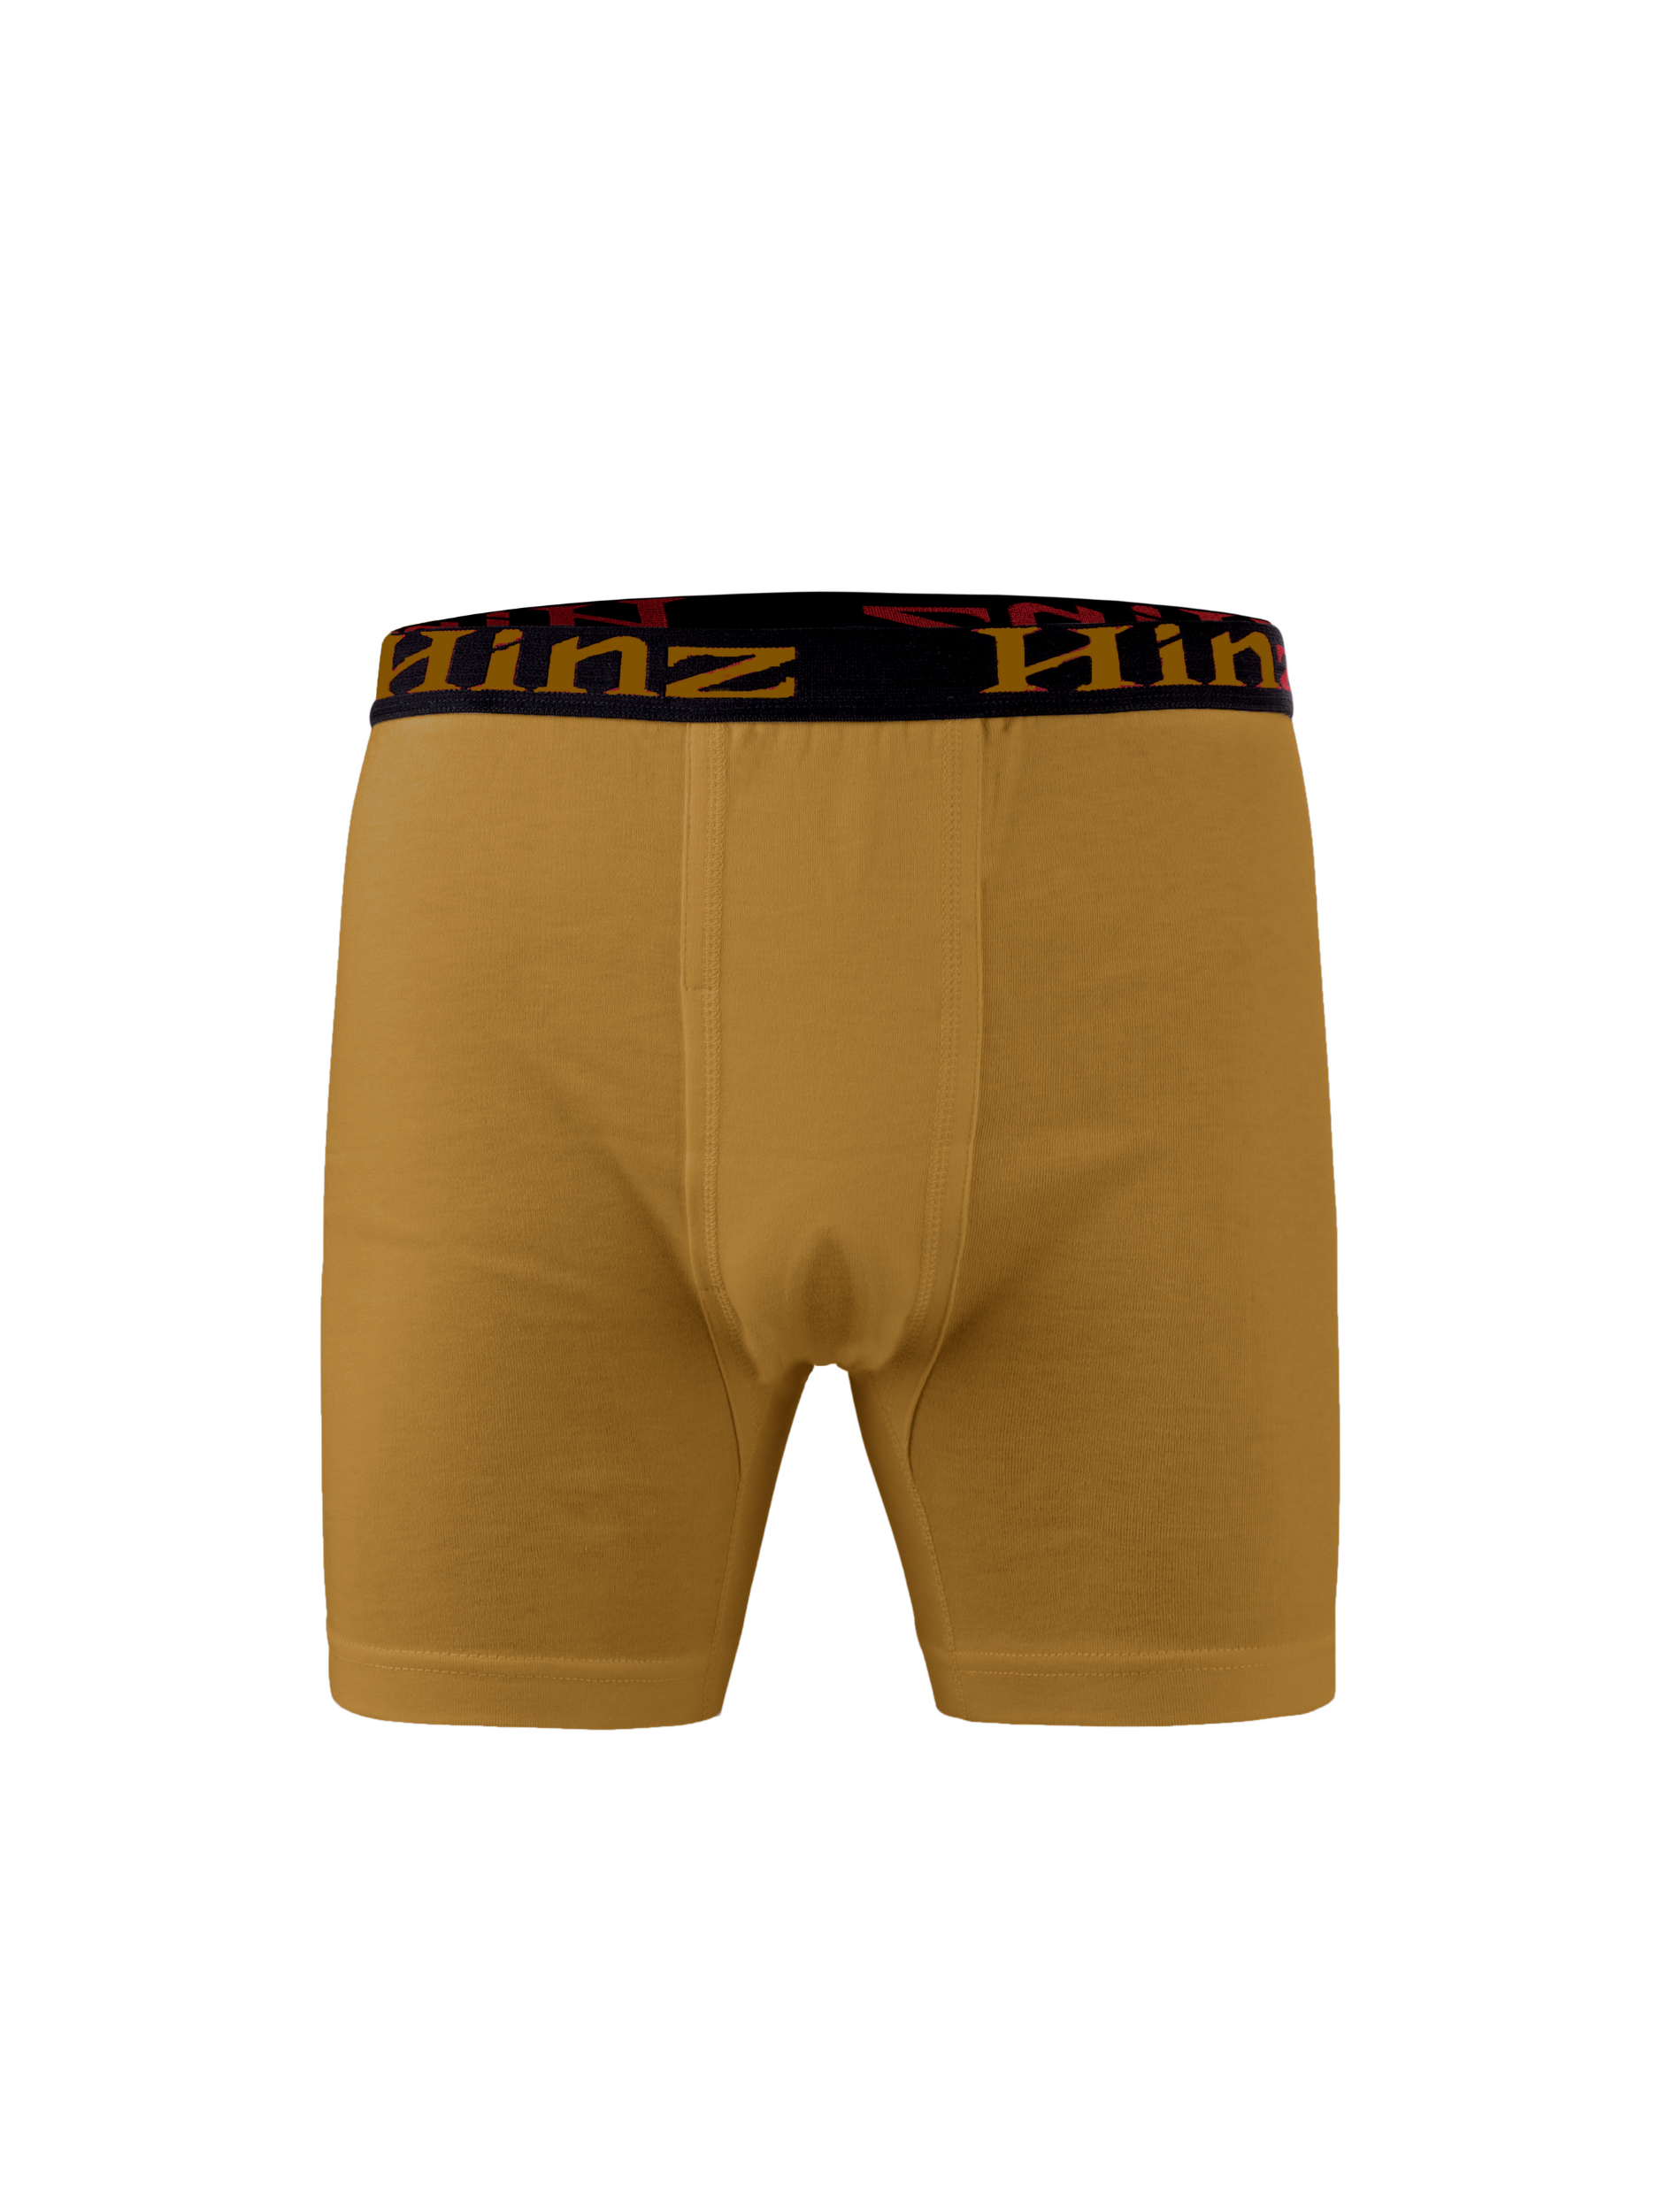 Men's Signature Cotton Boxer Shorts (Multi-Colors) 502